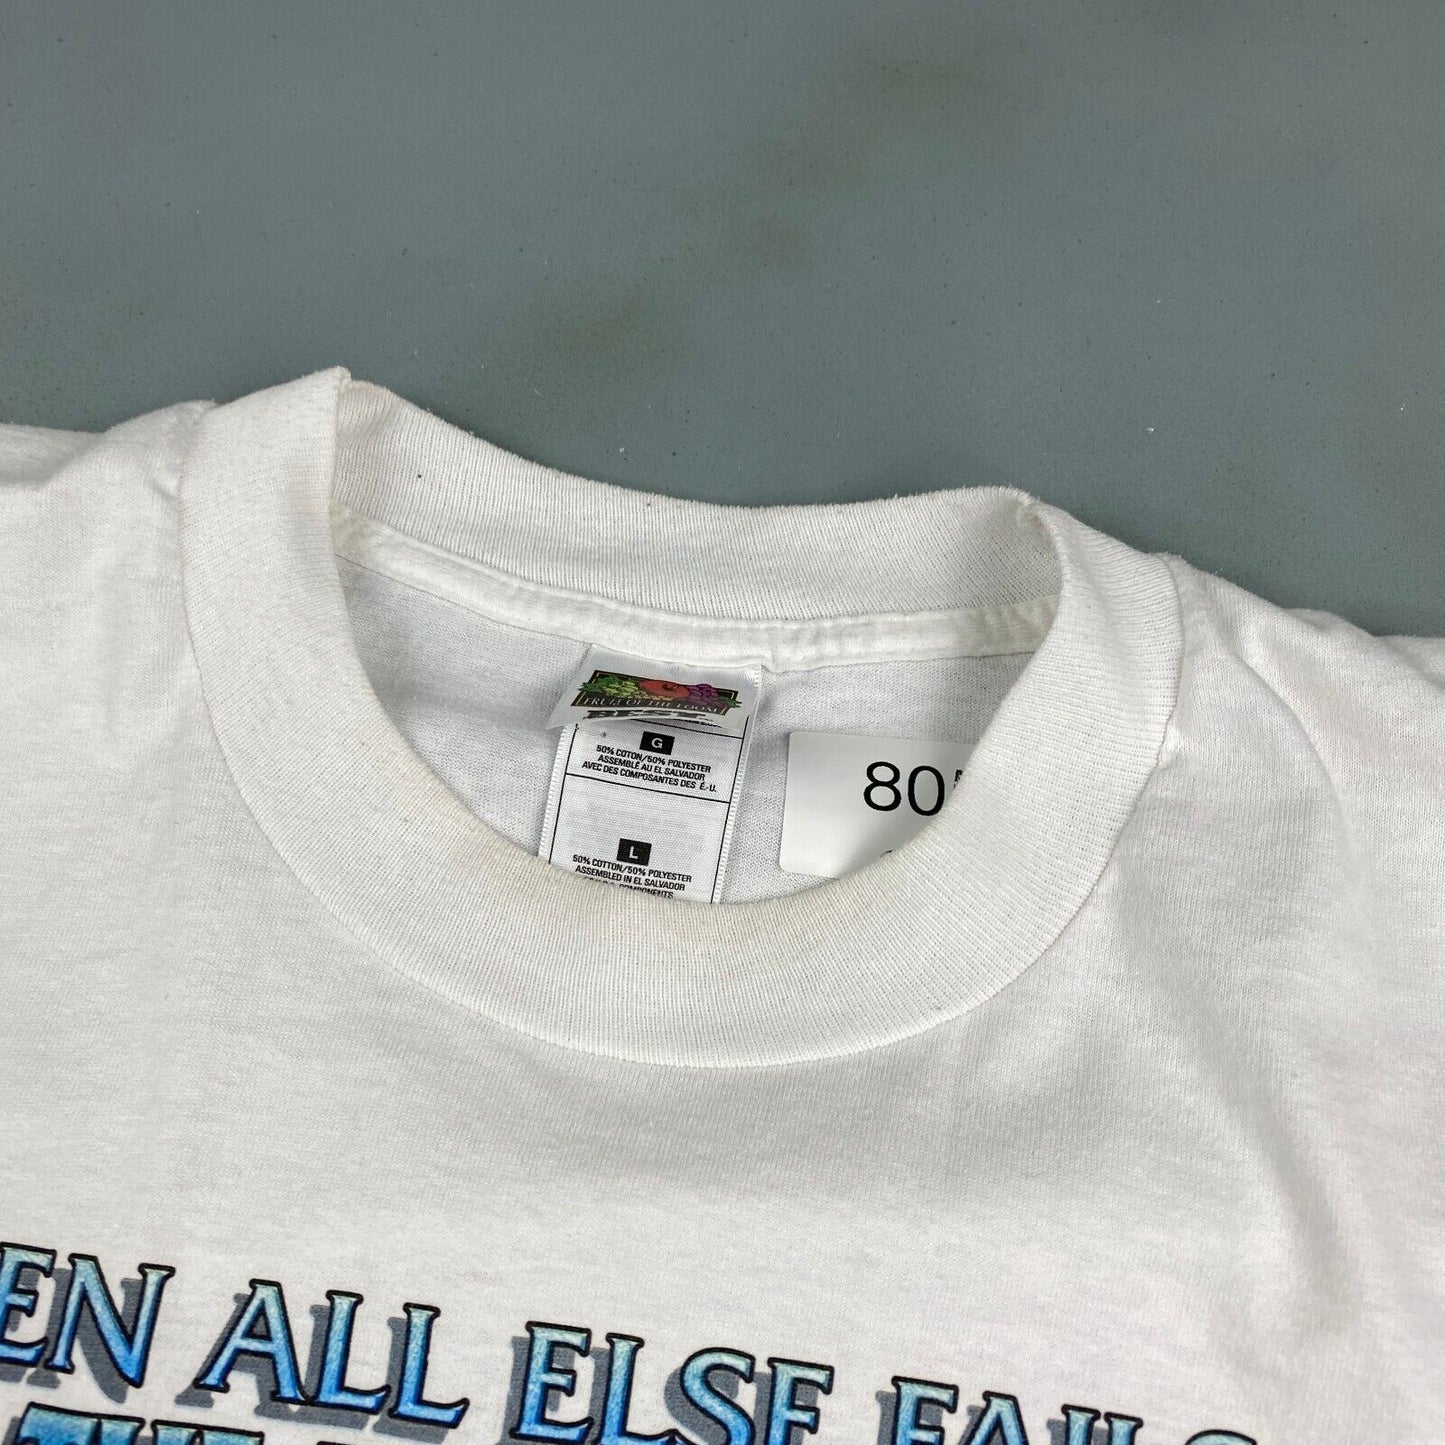 VINTAGE 90s When All Else Fails Read The Instructions T-Shirt sz Large Men Adult